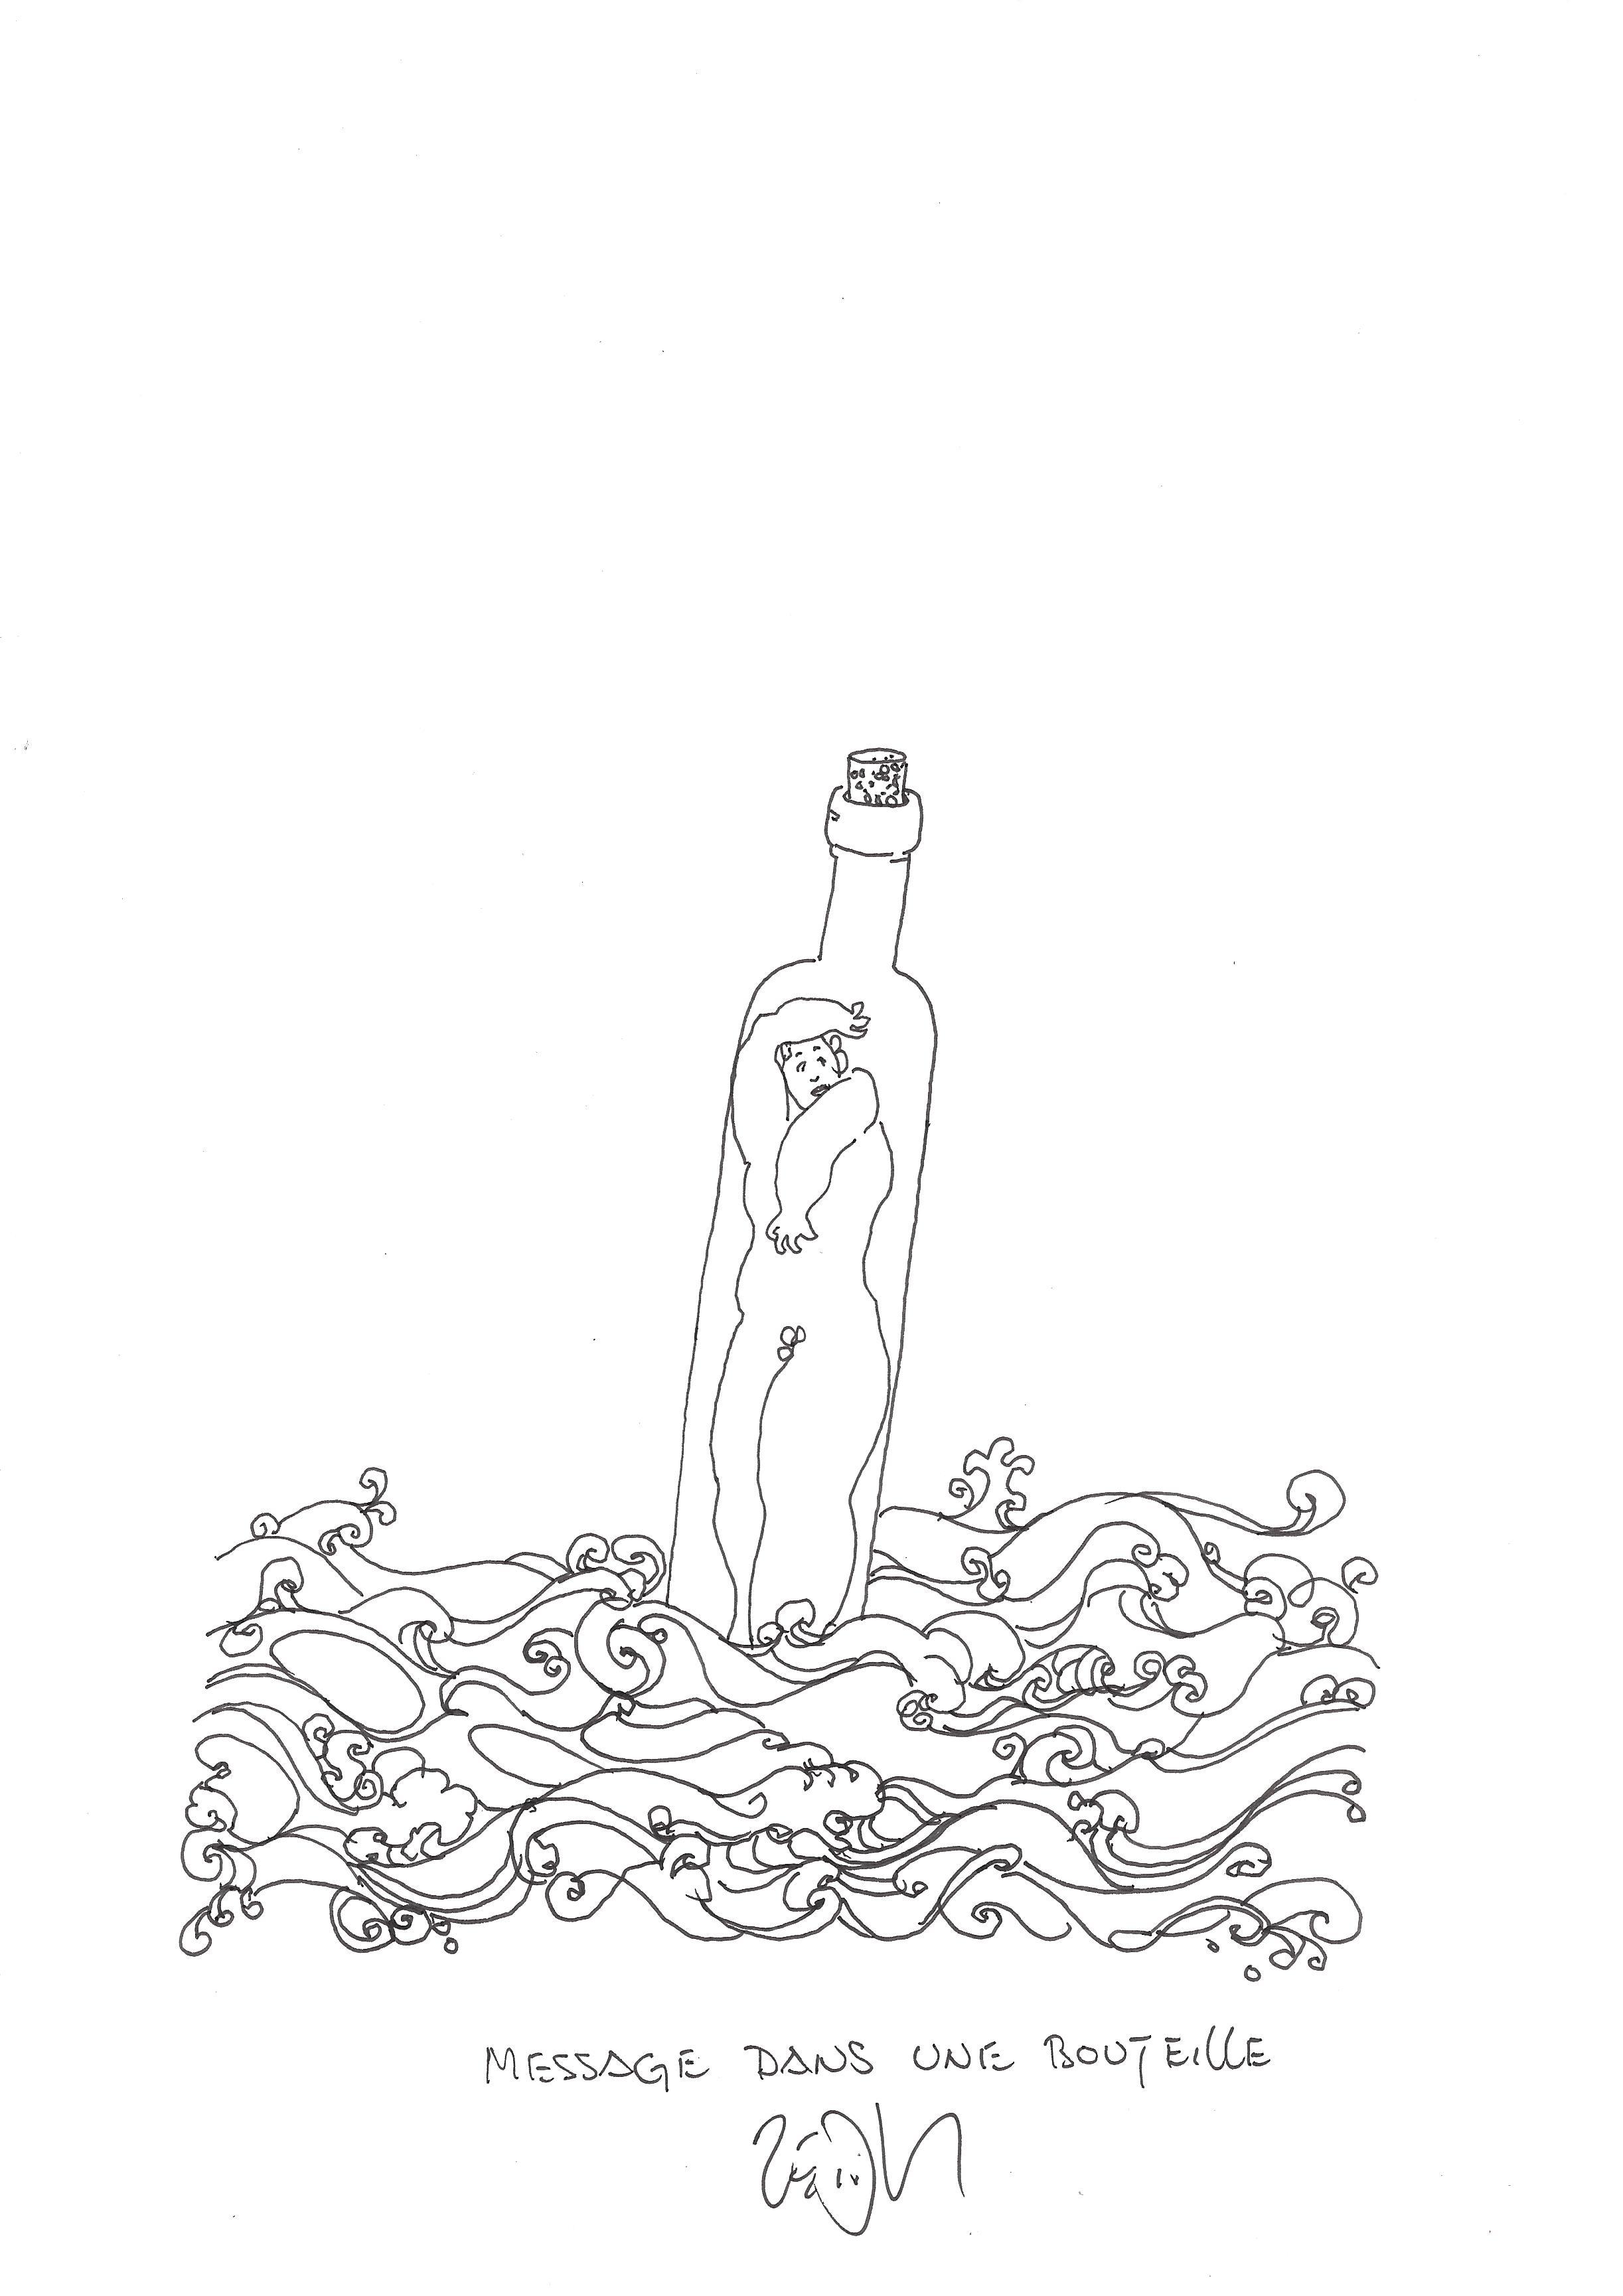 « Message in a bottle – Message dans une bouteille »